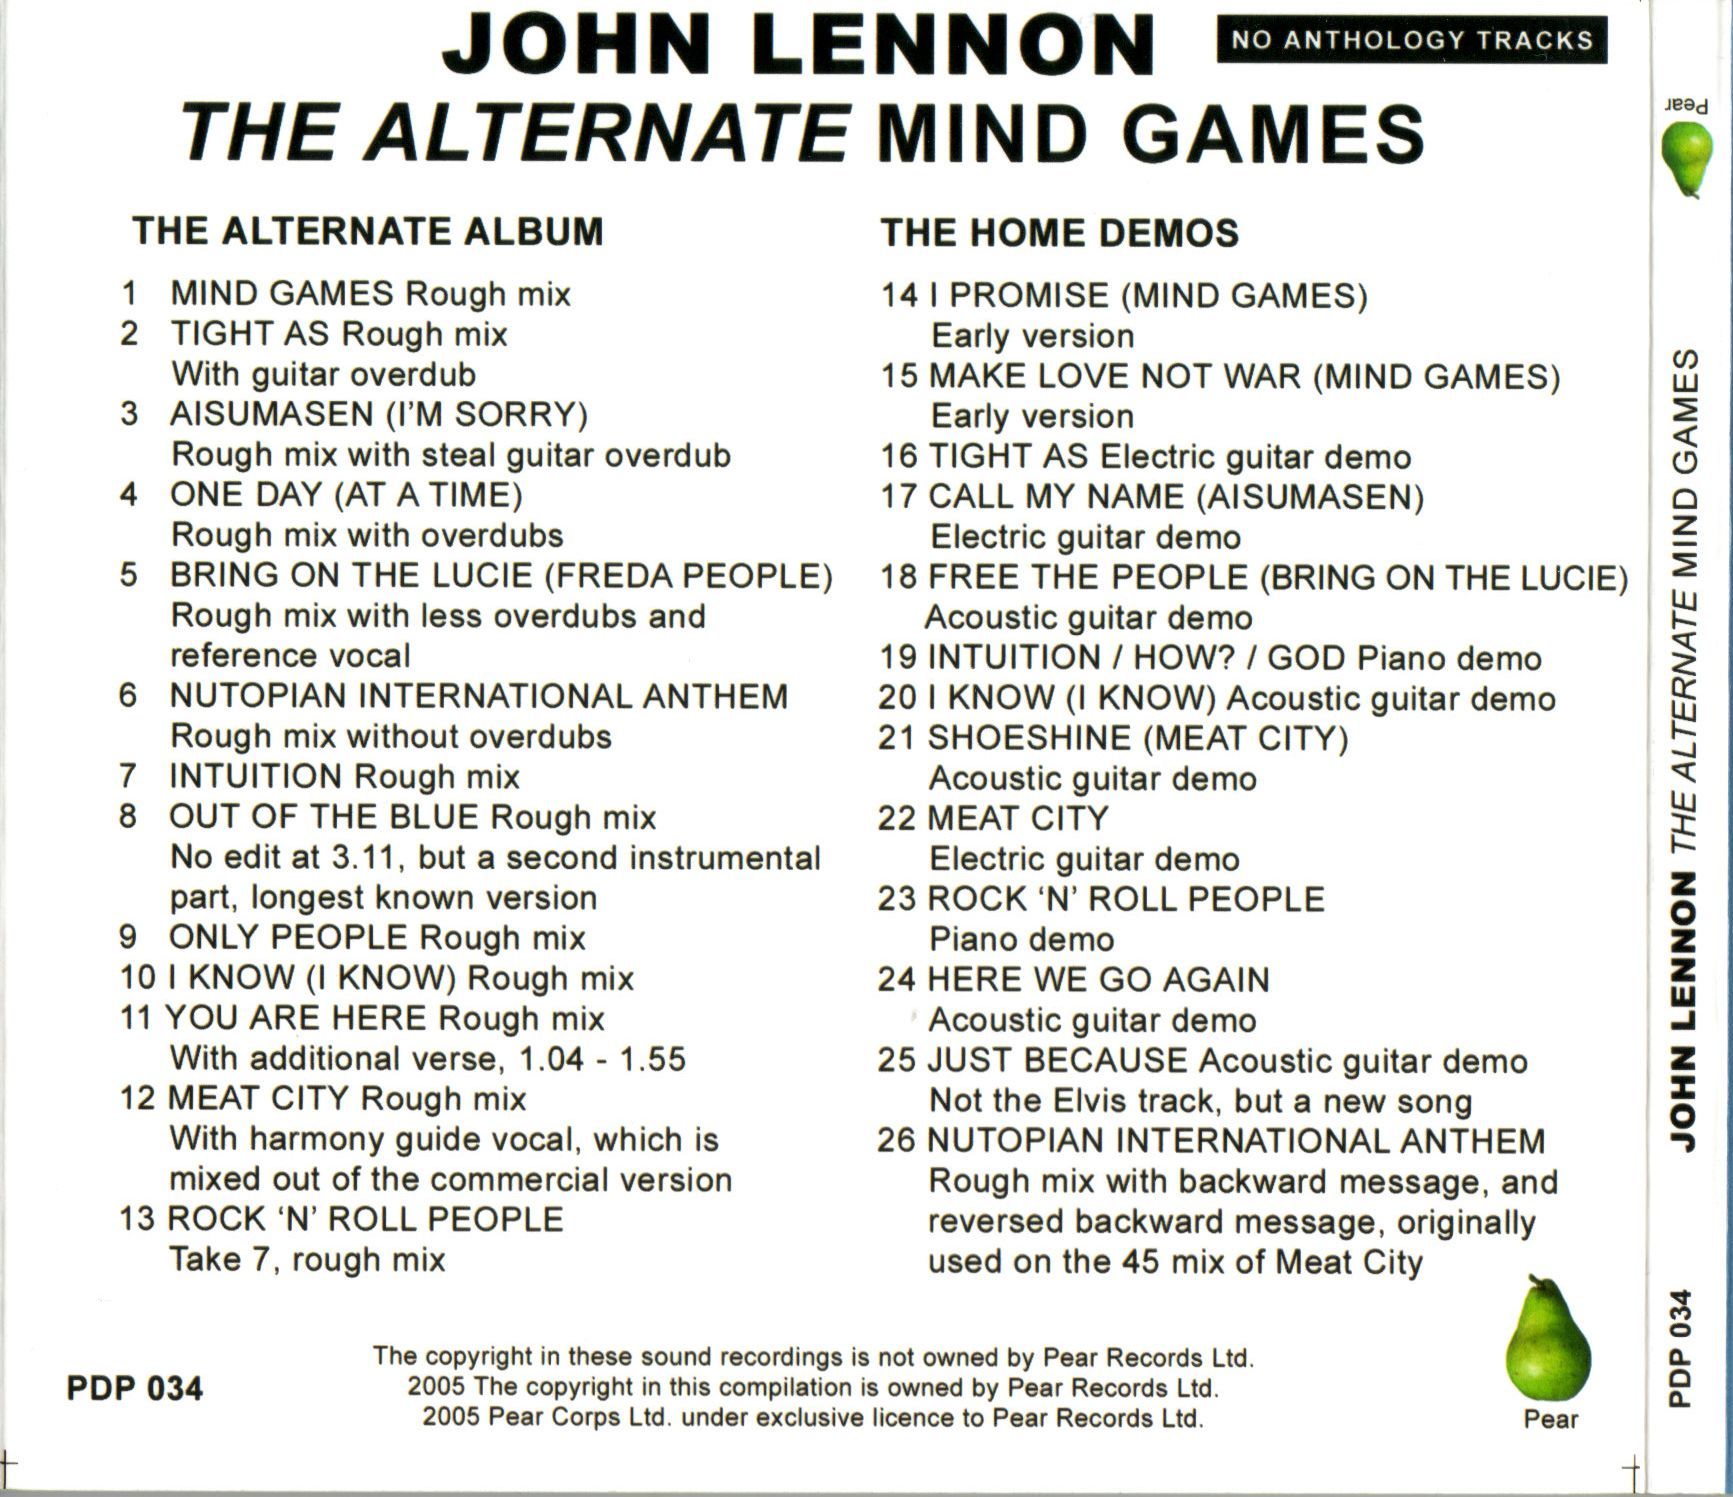 JohnLennon-AlternateMindGames (4).jpg